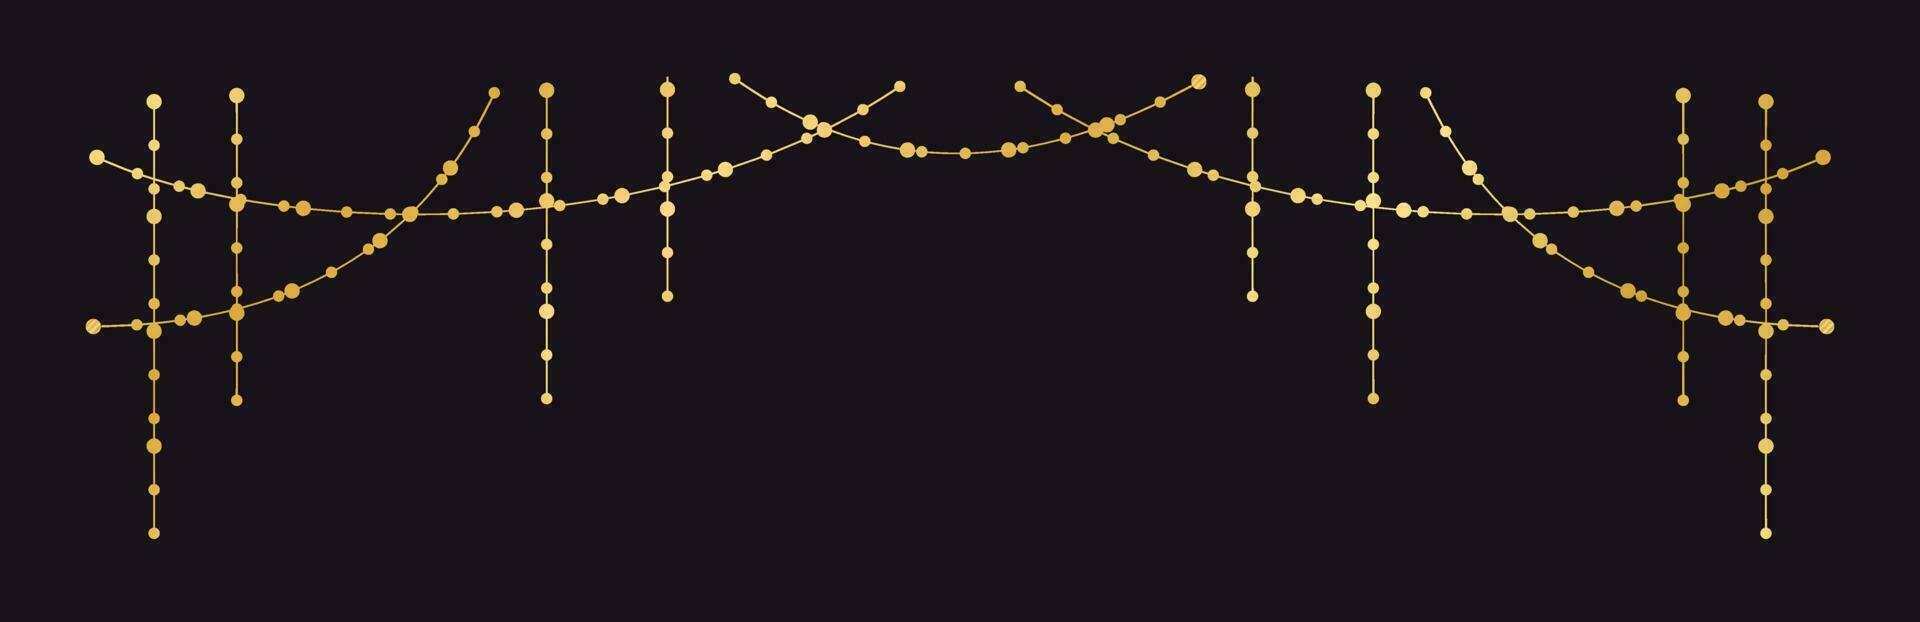 vector horizontaal grens van abstract goud draad licht slingers. feestelijk decoratie met glimmend Kerstmis lichten. gloeiend bollen van de verschillend maten.